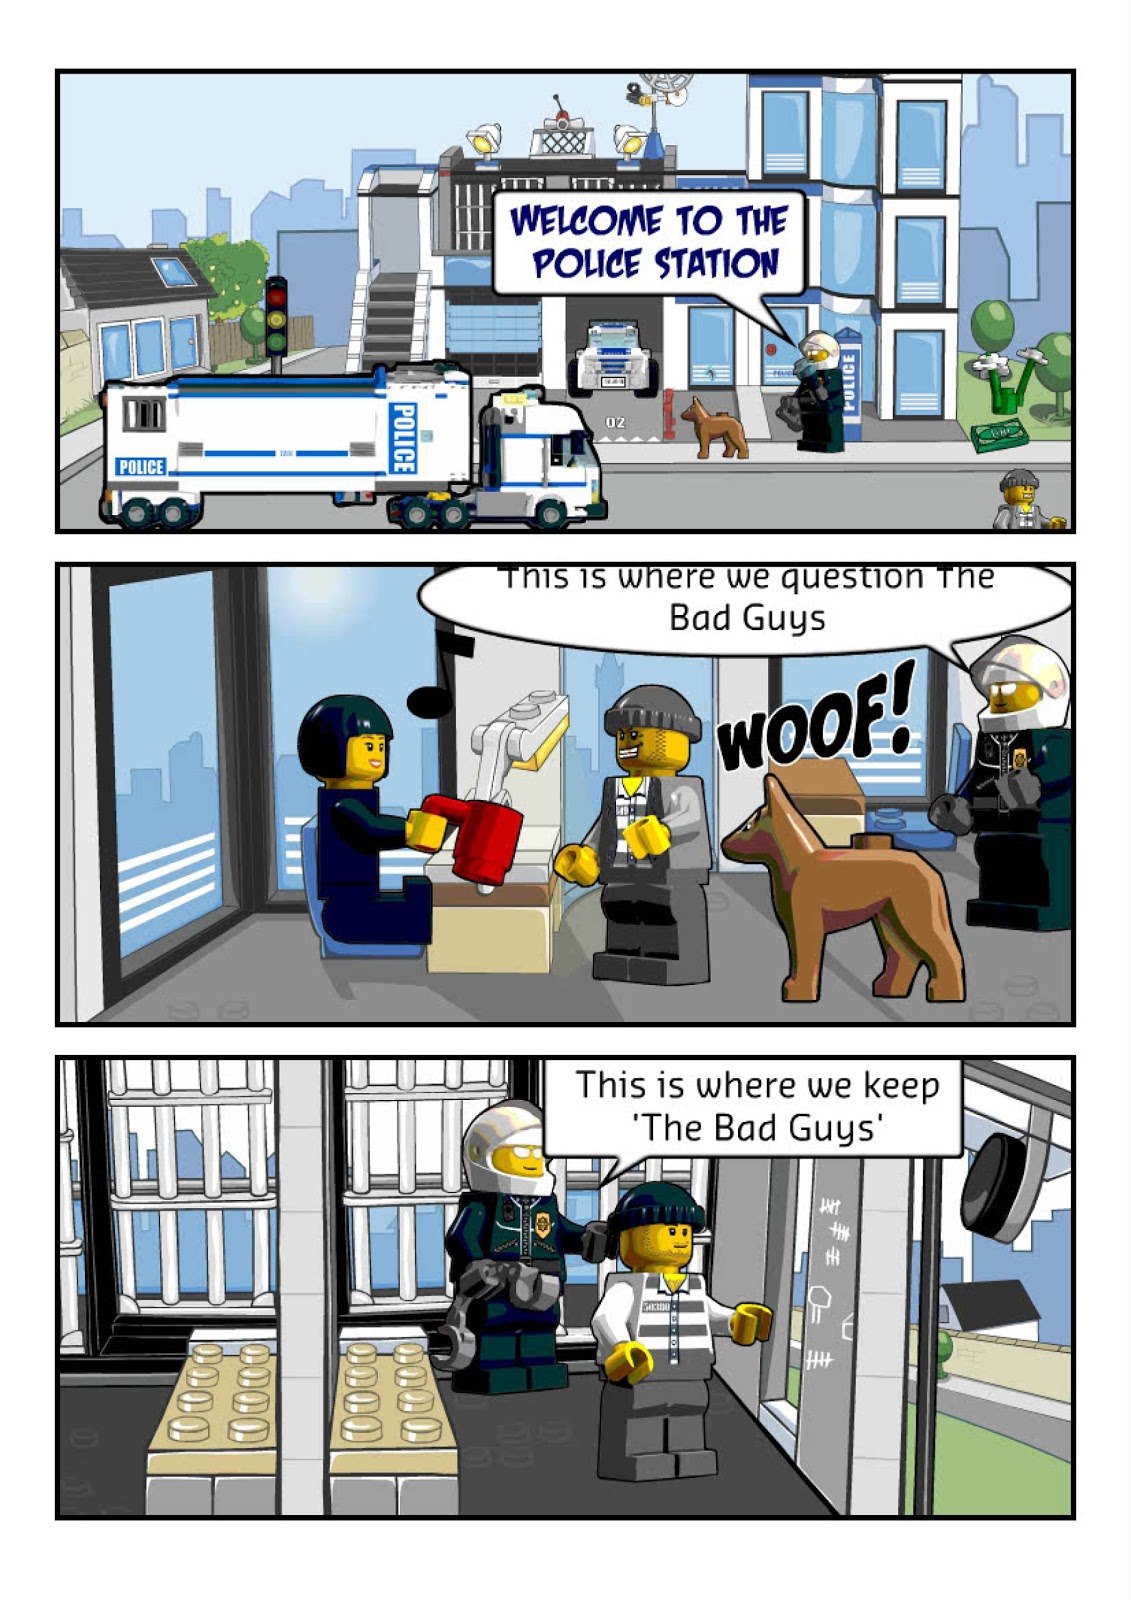 Lego City Comics